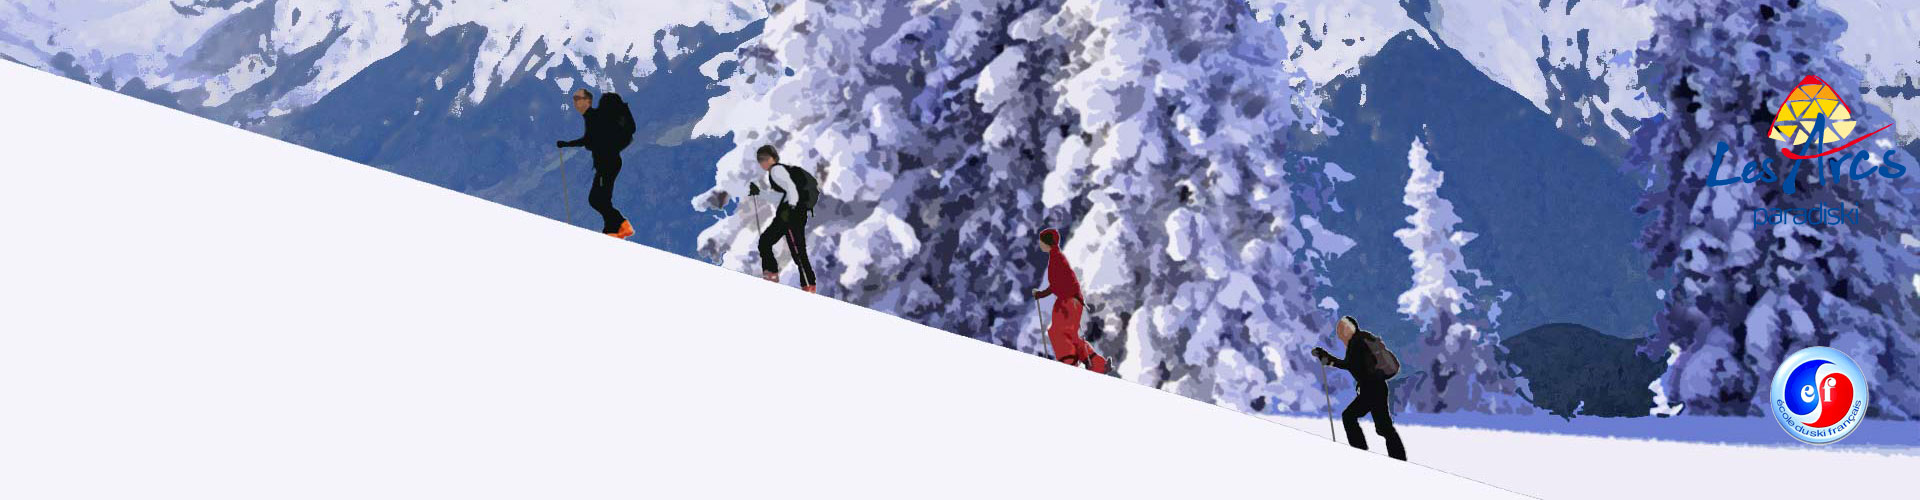 Ski de randonnée Les Arcs 2000, 1950, 1800 et 1600